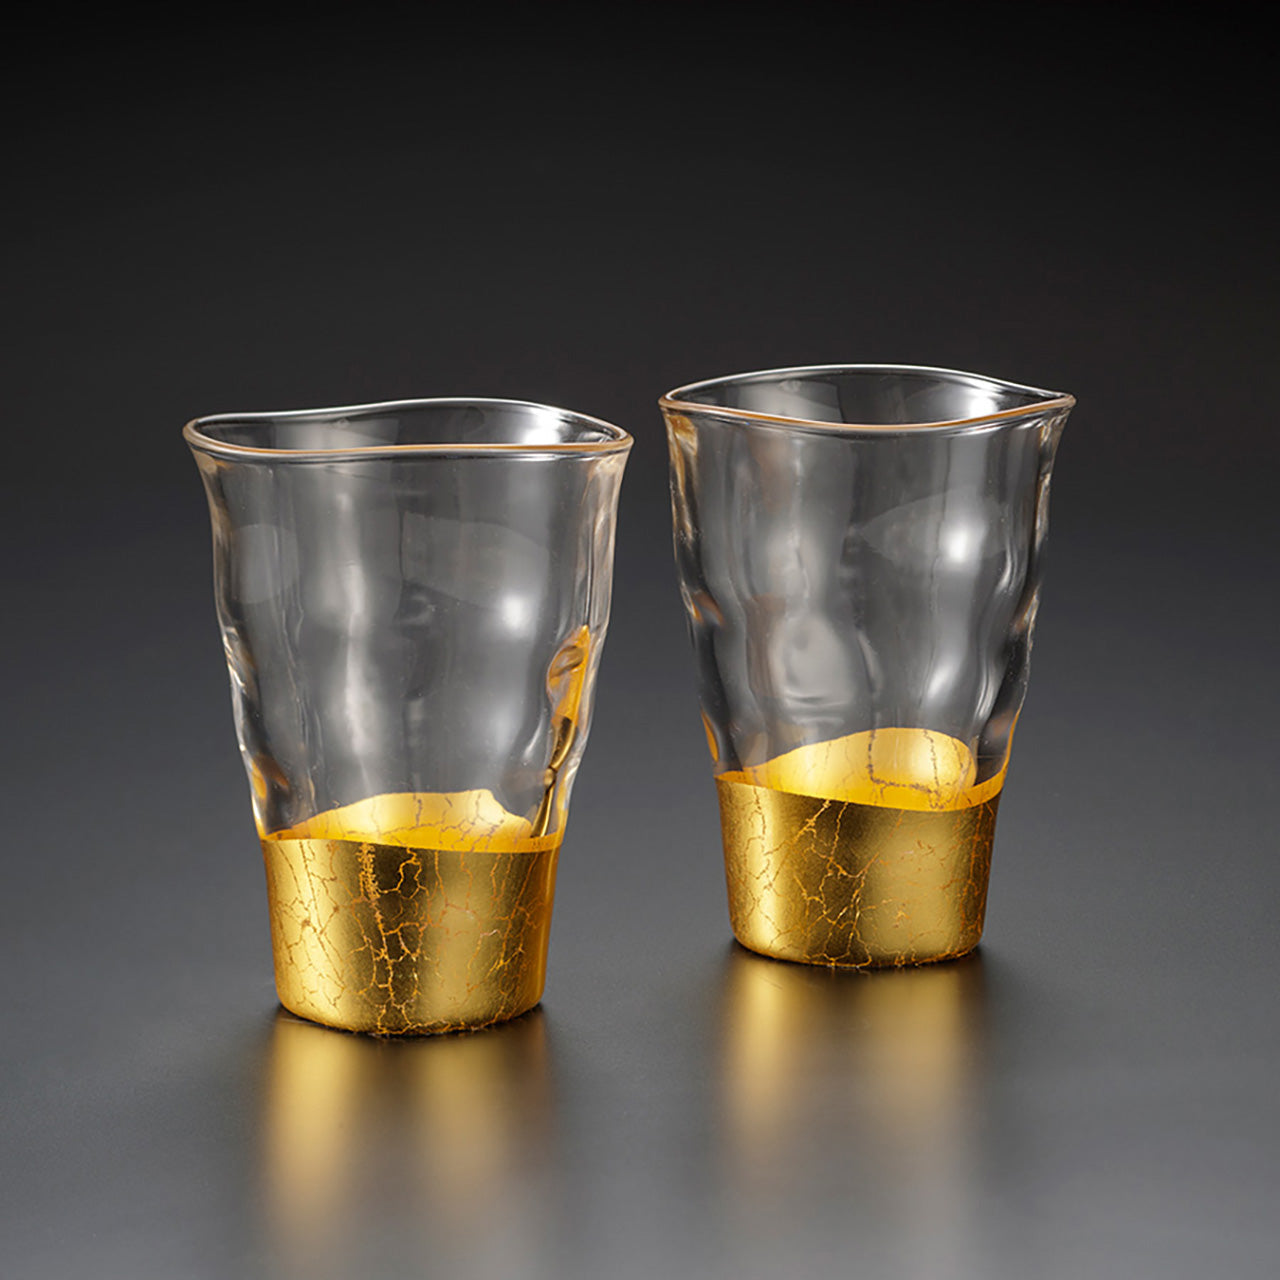 杯子 貫入 一口杯(2只裝) 金箔 玻璃 金澤箔 工藝材料